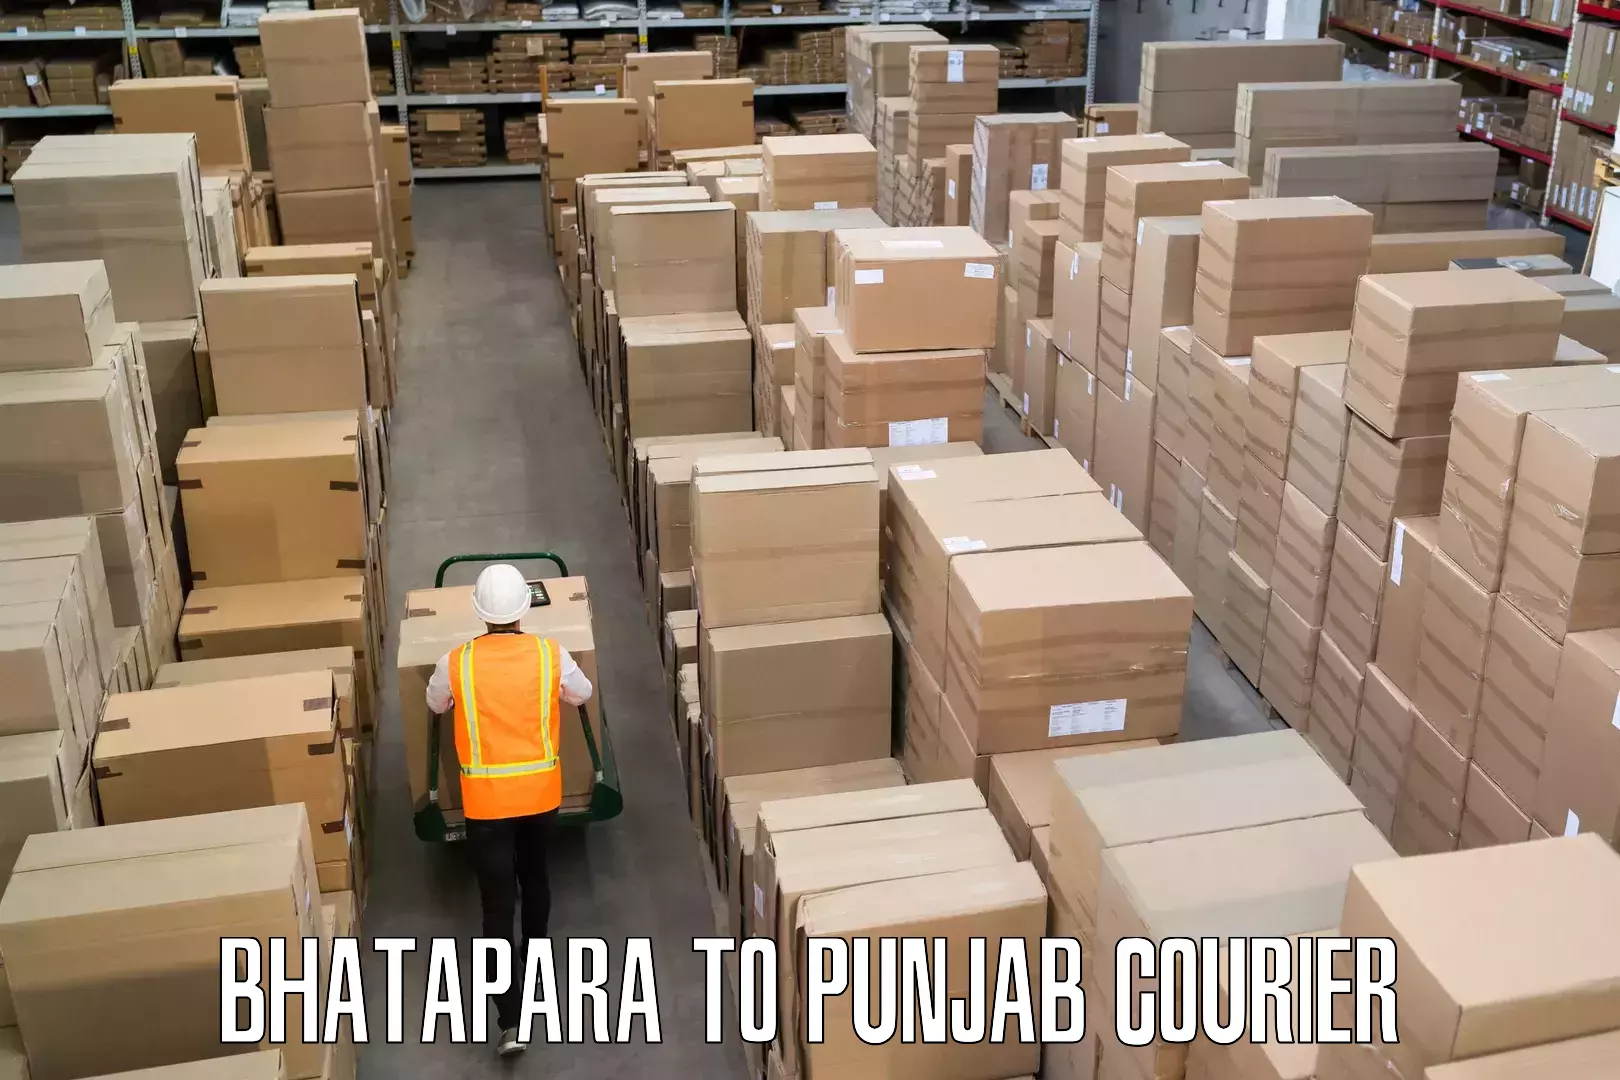 Baggage transport technology Bhatapara to Punjab